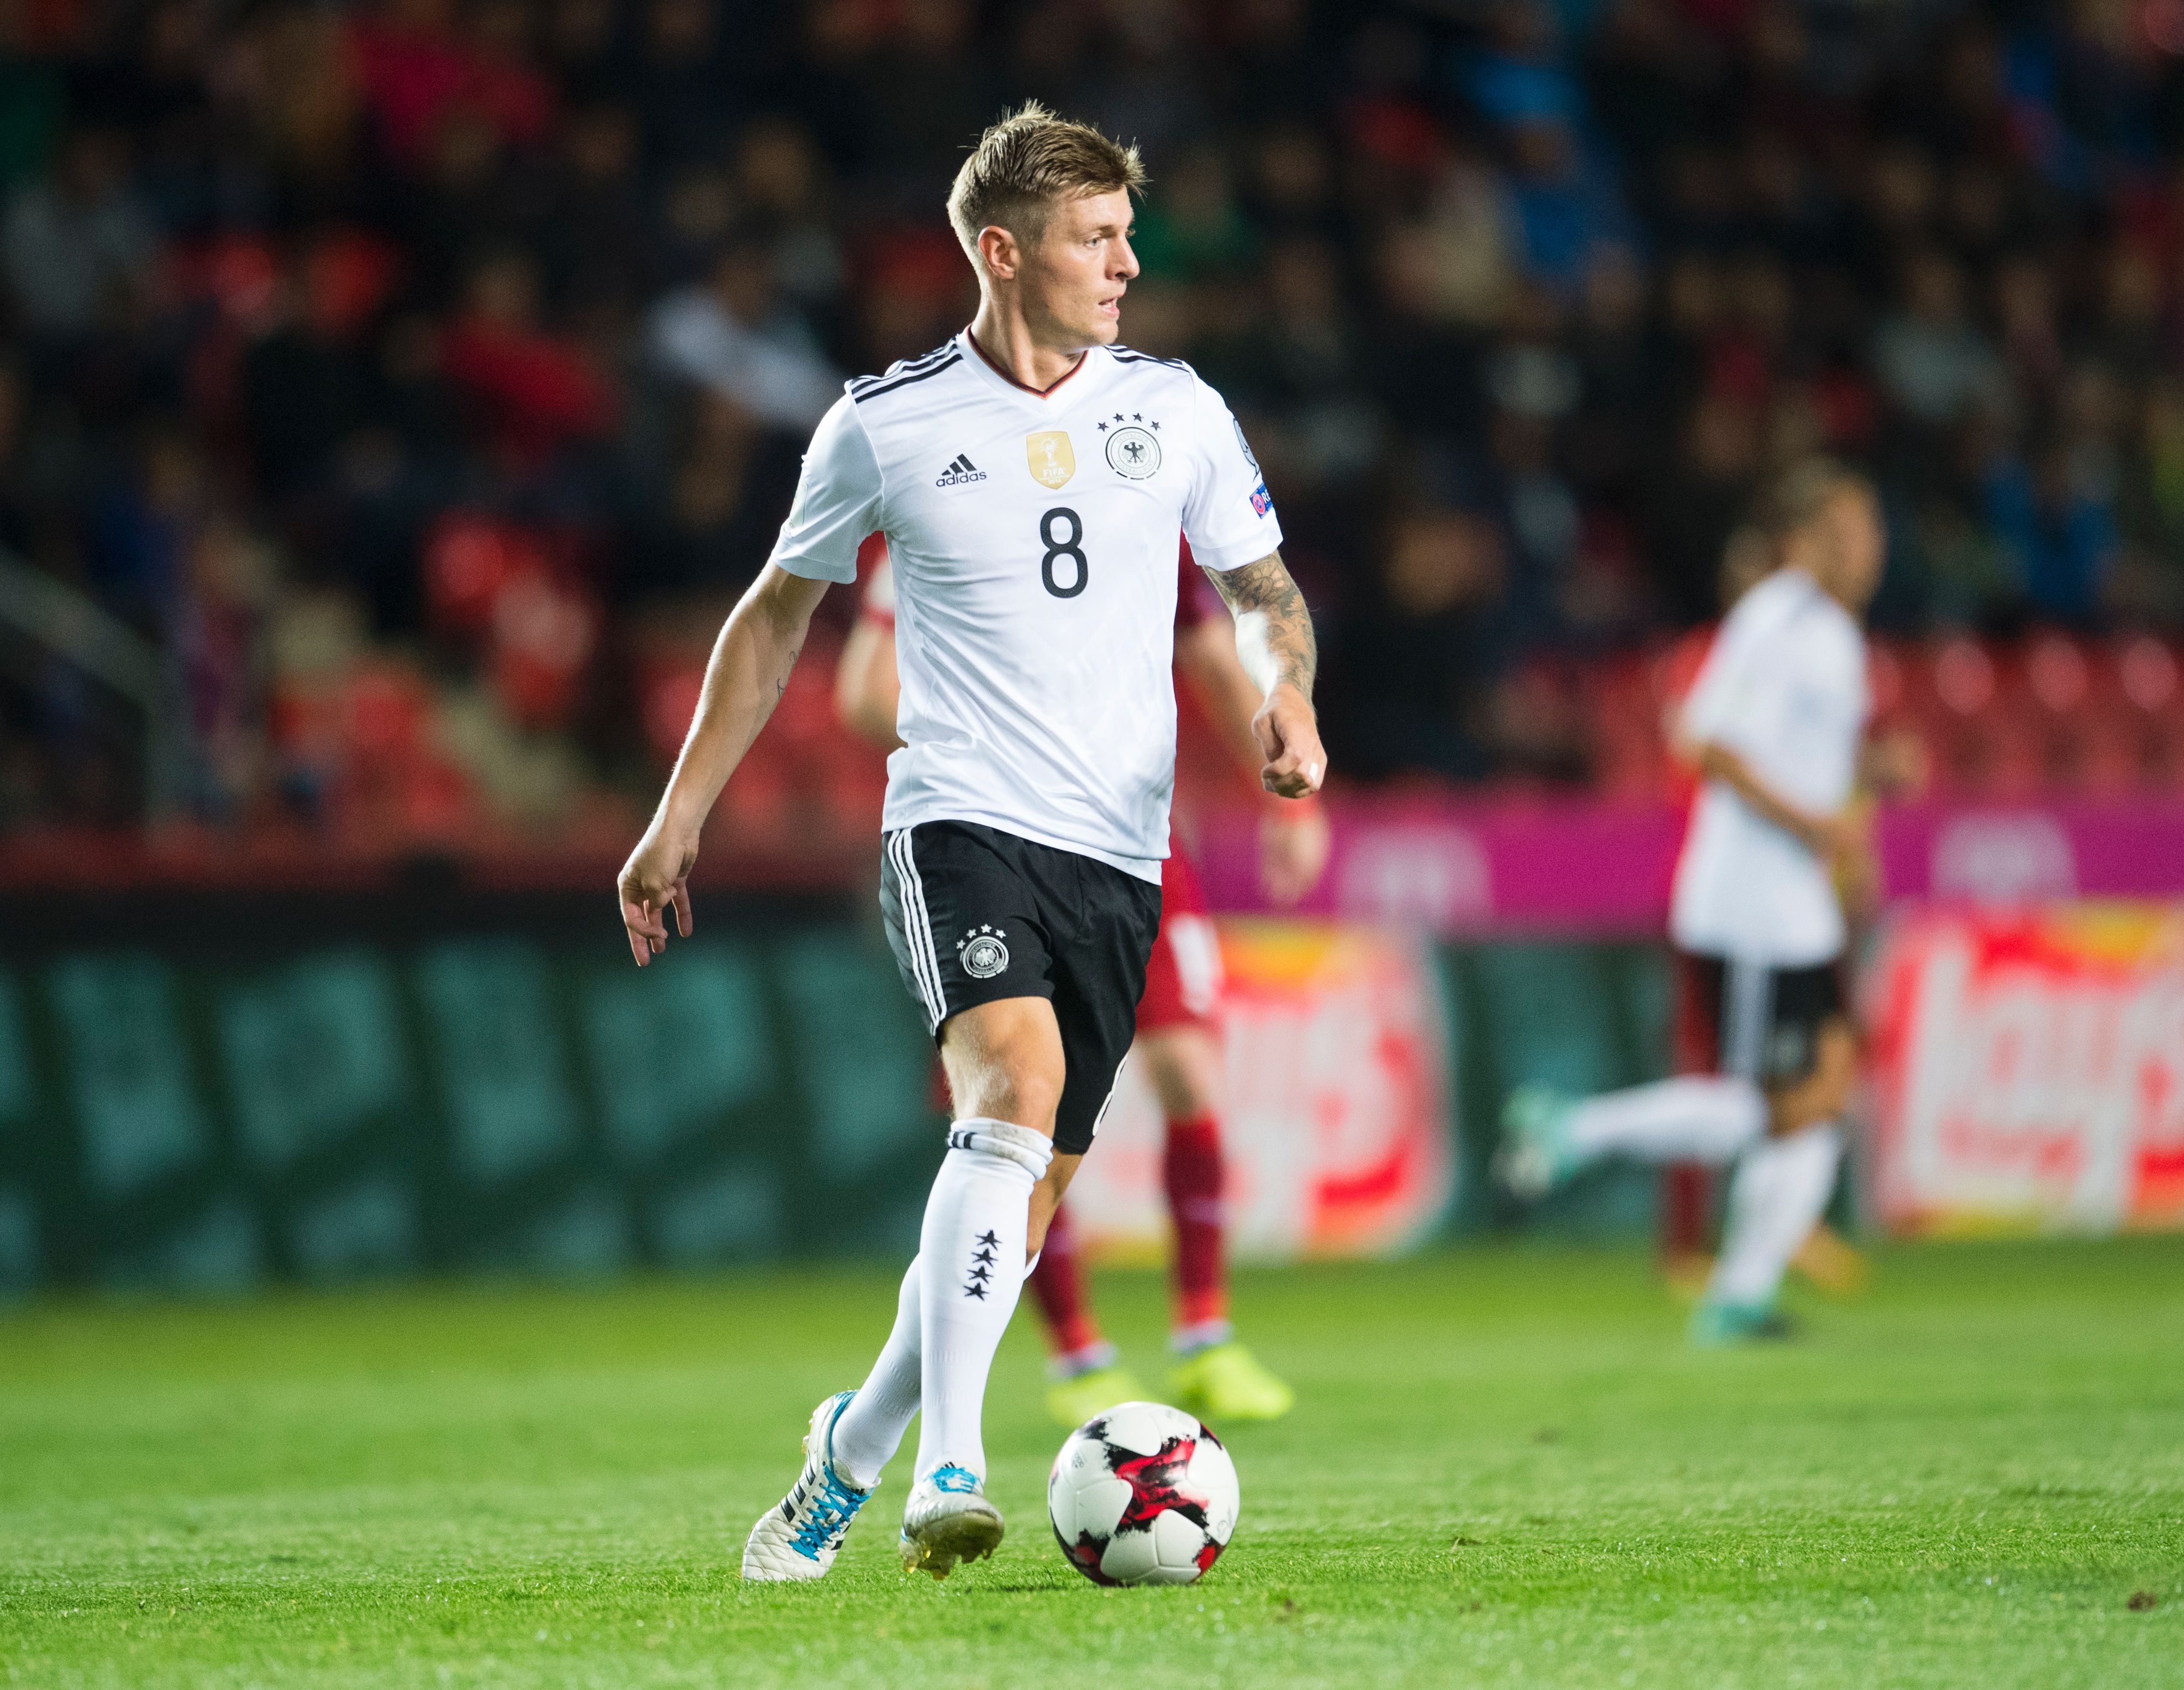 Kroos es el tercer capitán de Alemania aunque debería ser el segundo tras Neuer por antigüedad pero Hummels lo fue en el último precedente. (Getty Images)